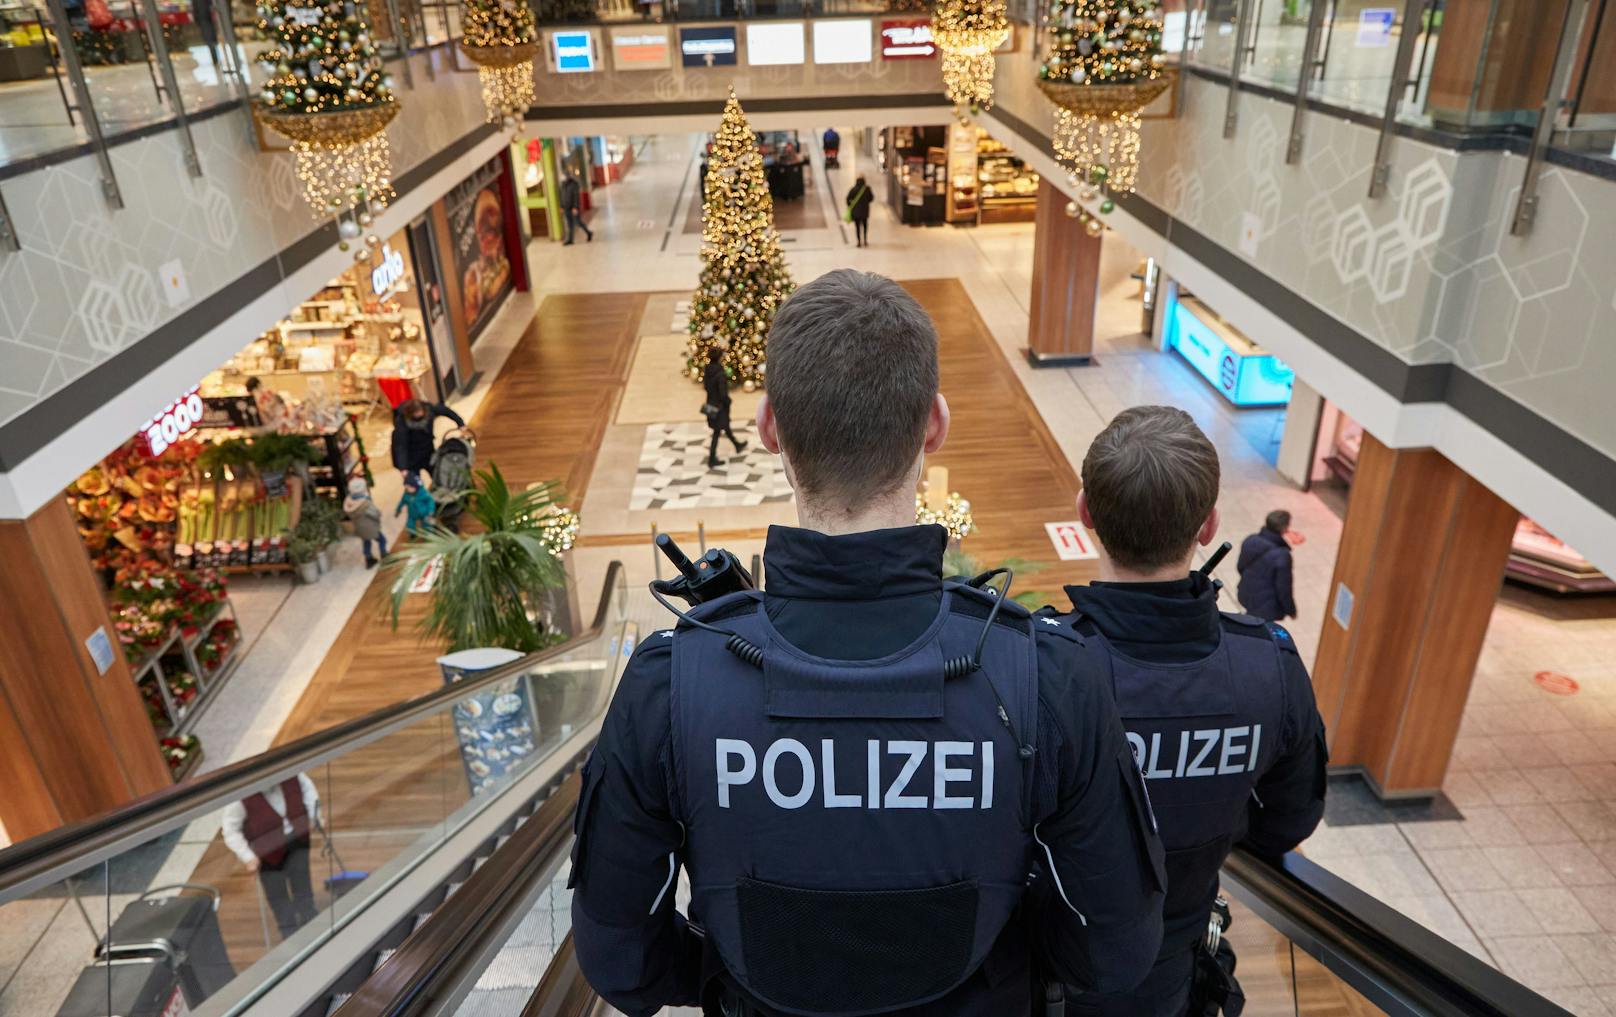 Ein Ehepaar aus dem deutschen Bundesland Baden-Württemberg hat am Heiligen Abend wegen zur Neige gehender Lebensmittelvorräte die Polizei gerufen.